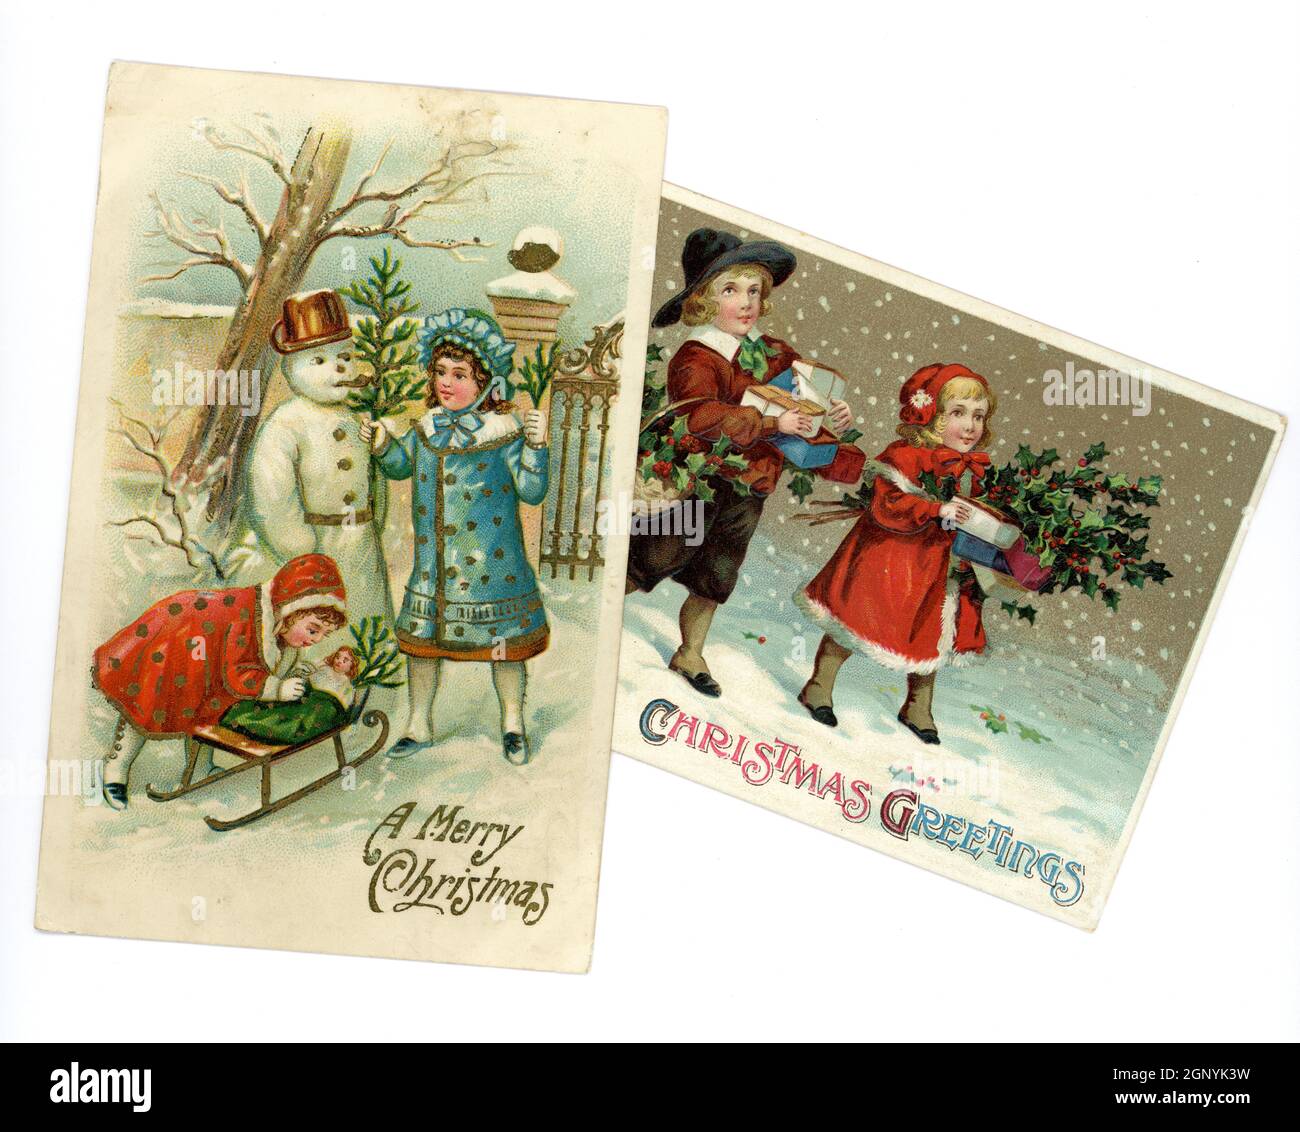 Cartes postales de Noël originales en relief de l'époque édouardienne imprimées en Allemagne, de jeunes enfants adorés portant des vêtements d'hiver à la mode à cette époque, construisant un bonhomme de neige et portant des cadeaux, vers 1910, Royaume-Uni Banque D'Images